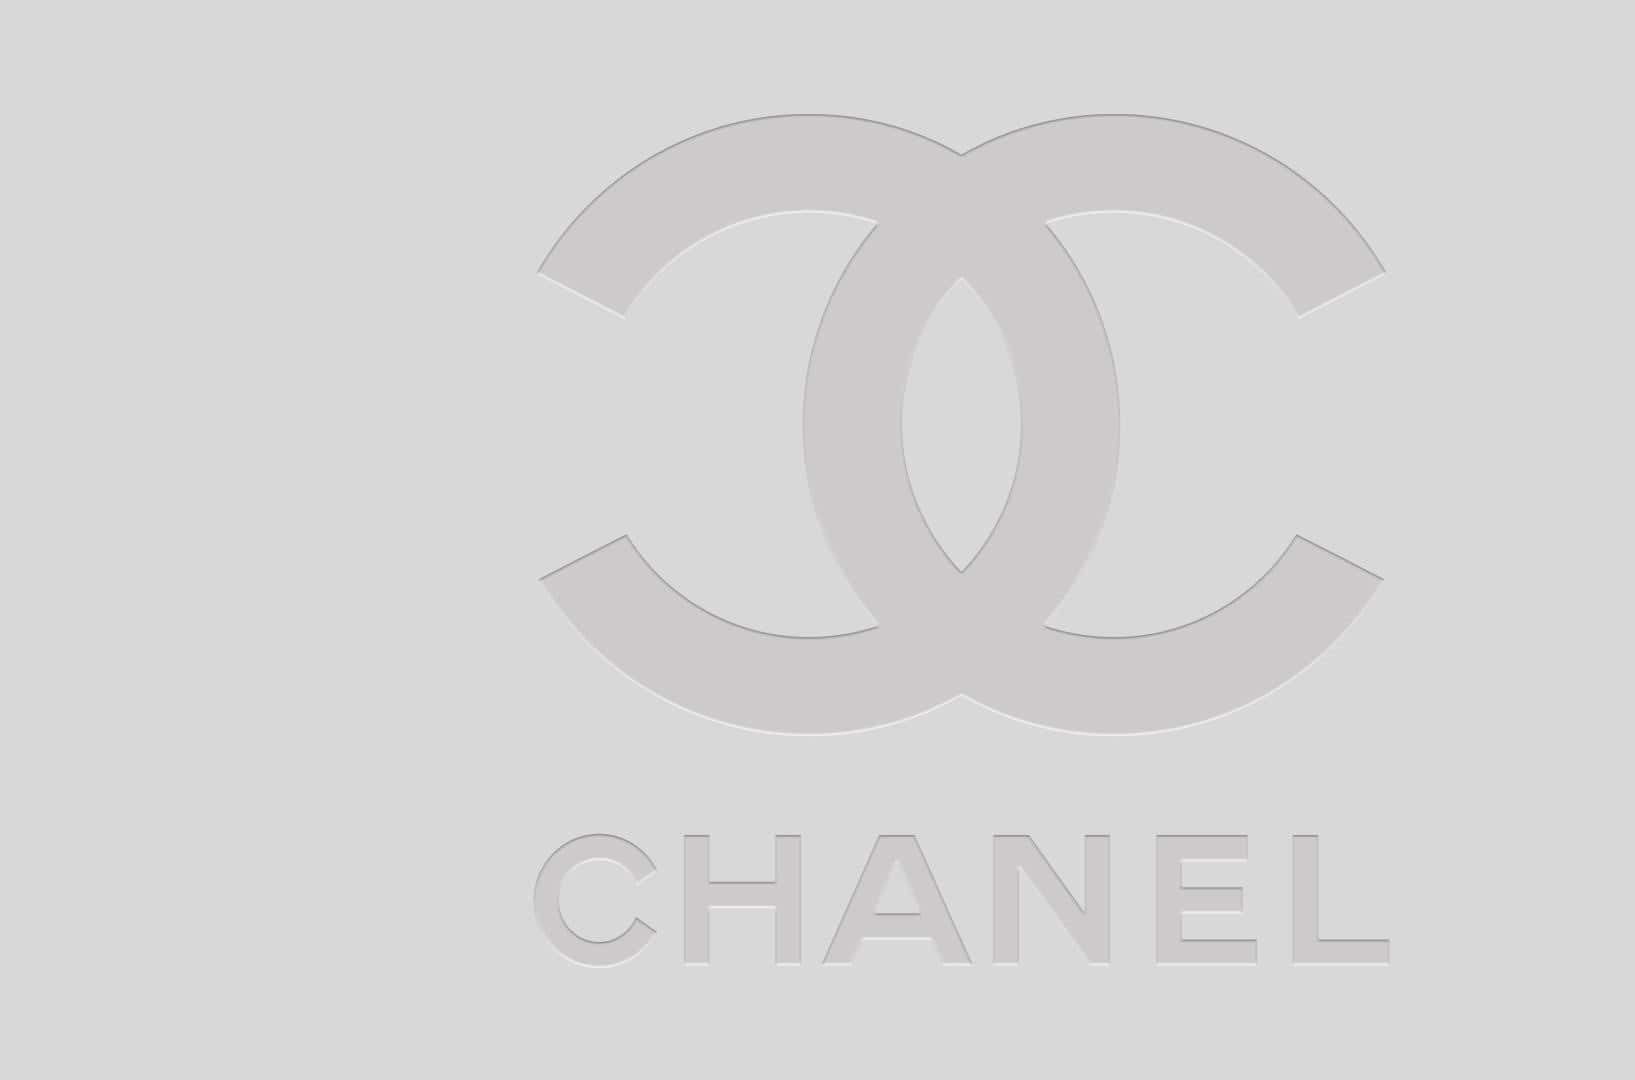 Dasikonische Chanel-logo Mit Seinen Ineinandergreifenden Cs.